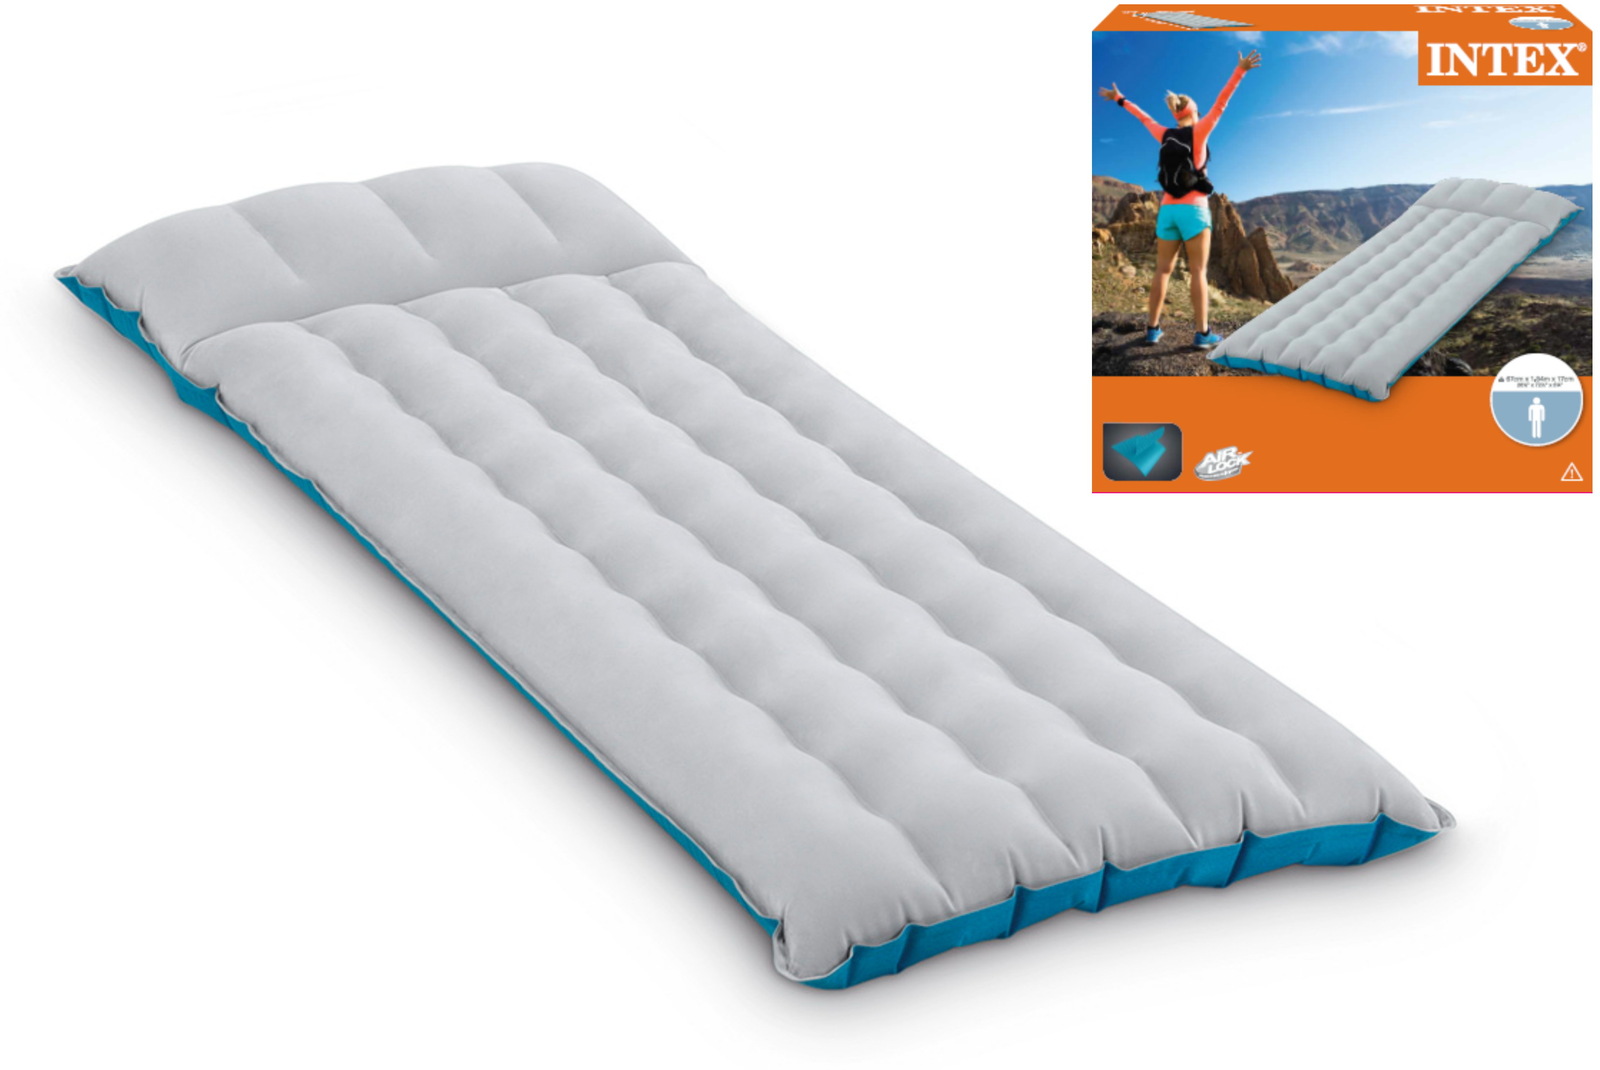 intex inflatable fabric camping air mattress